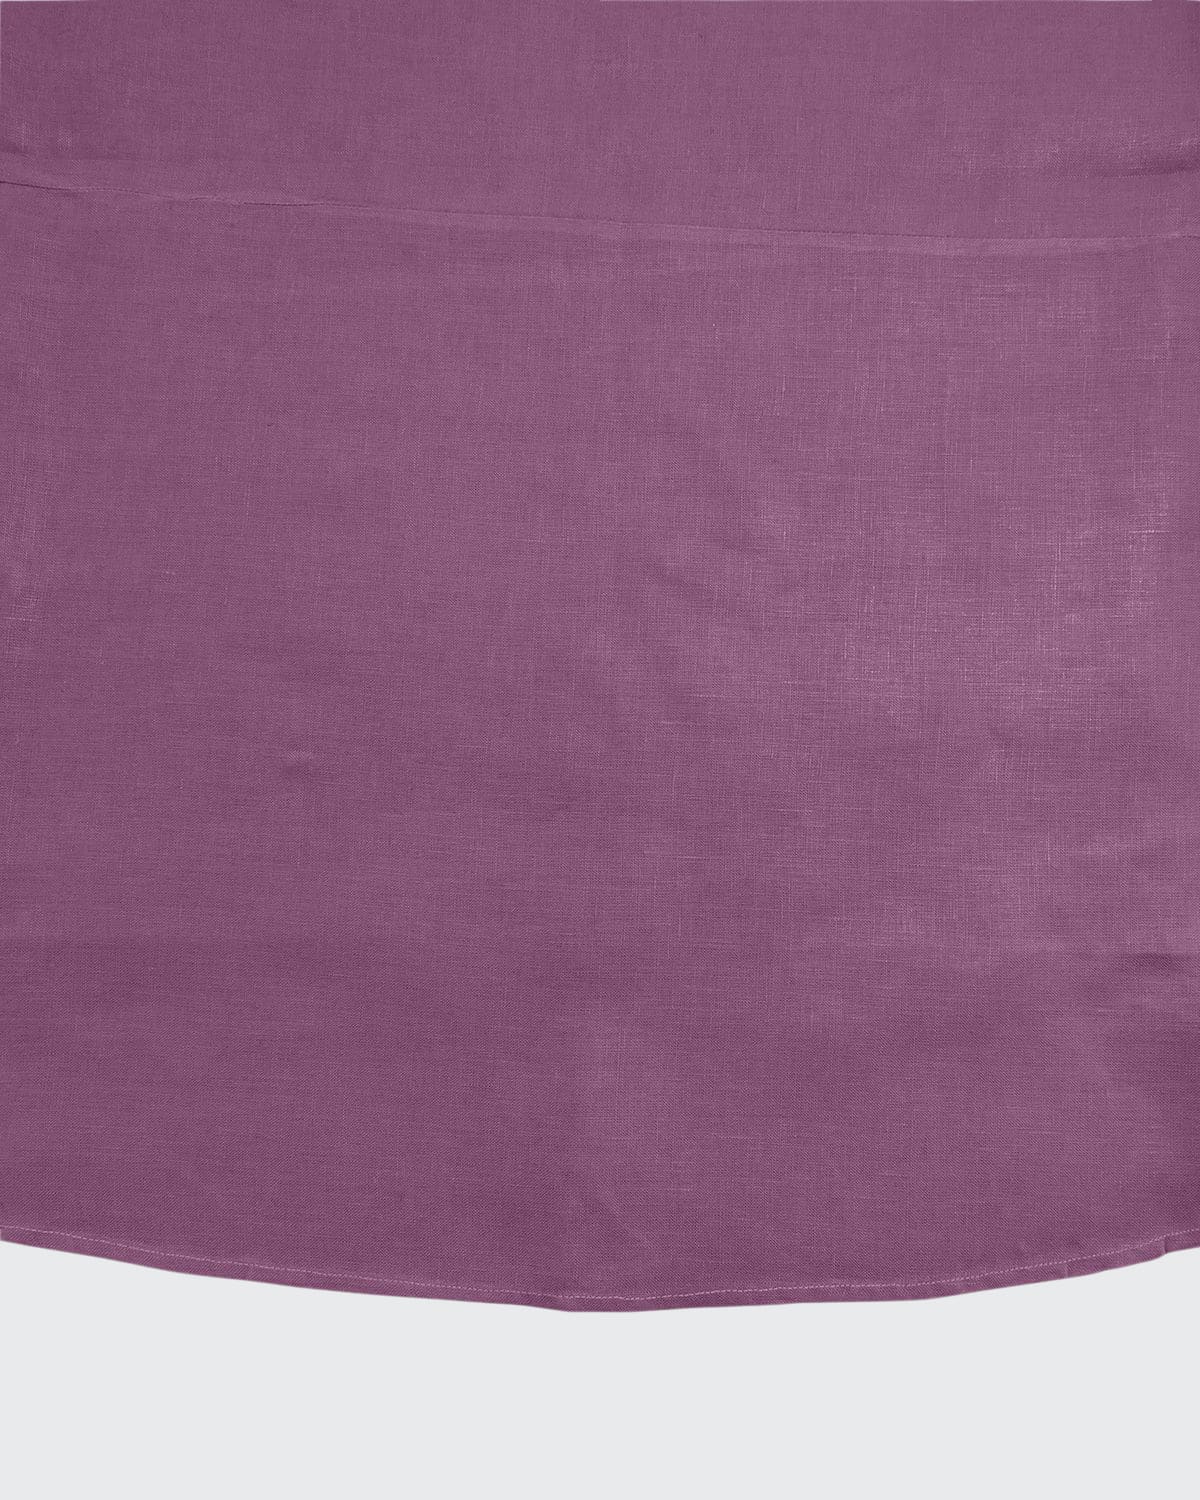 Sferra Hemstitch Round Tablecloth, 90"dia. In Purple